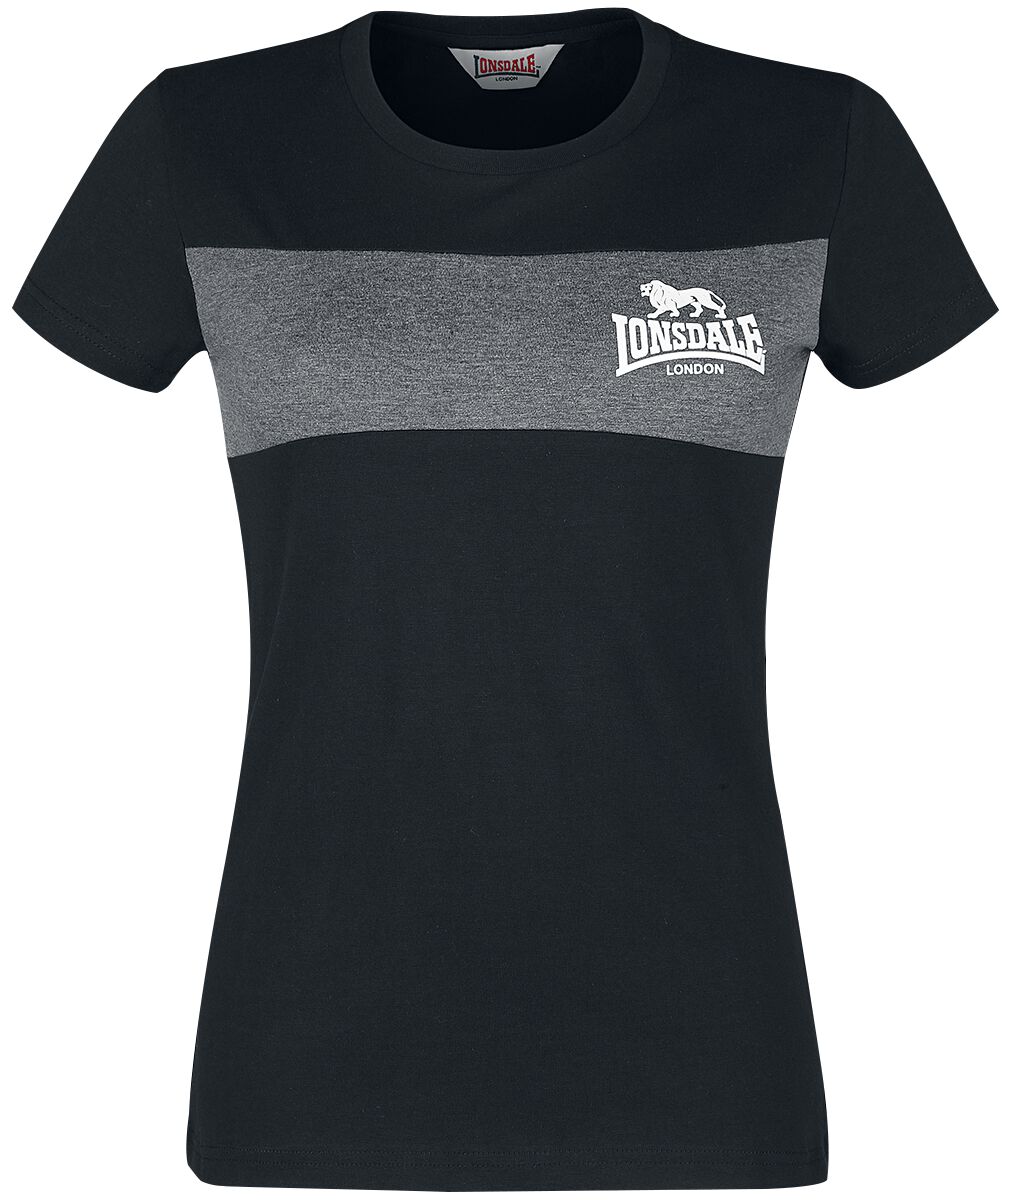 Lonsdale London T-Shirt - Dawsmere - XS bis 3XL - für Damen - Größe XL - schwarz